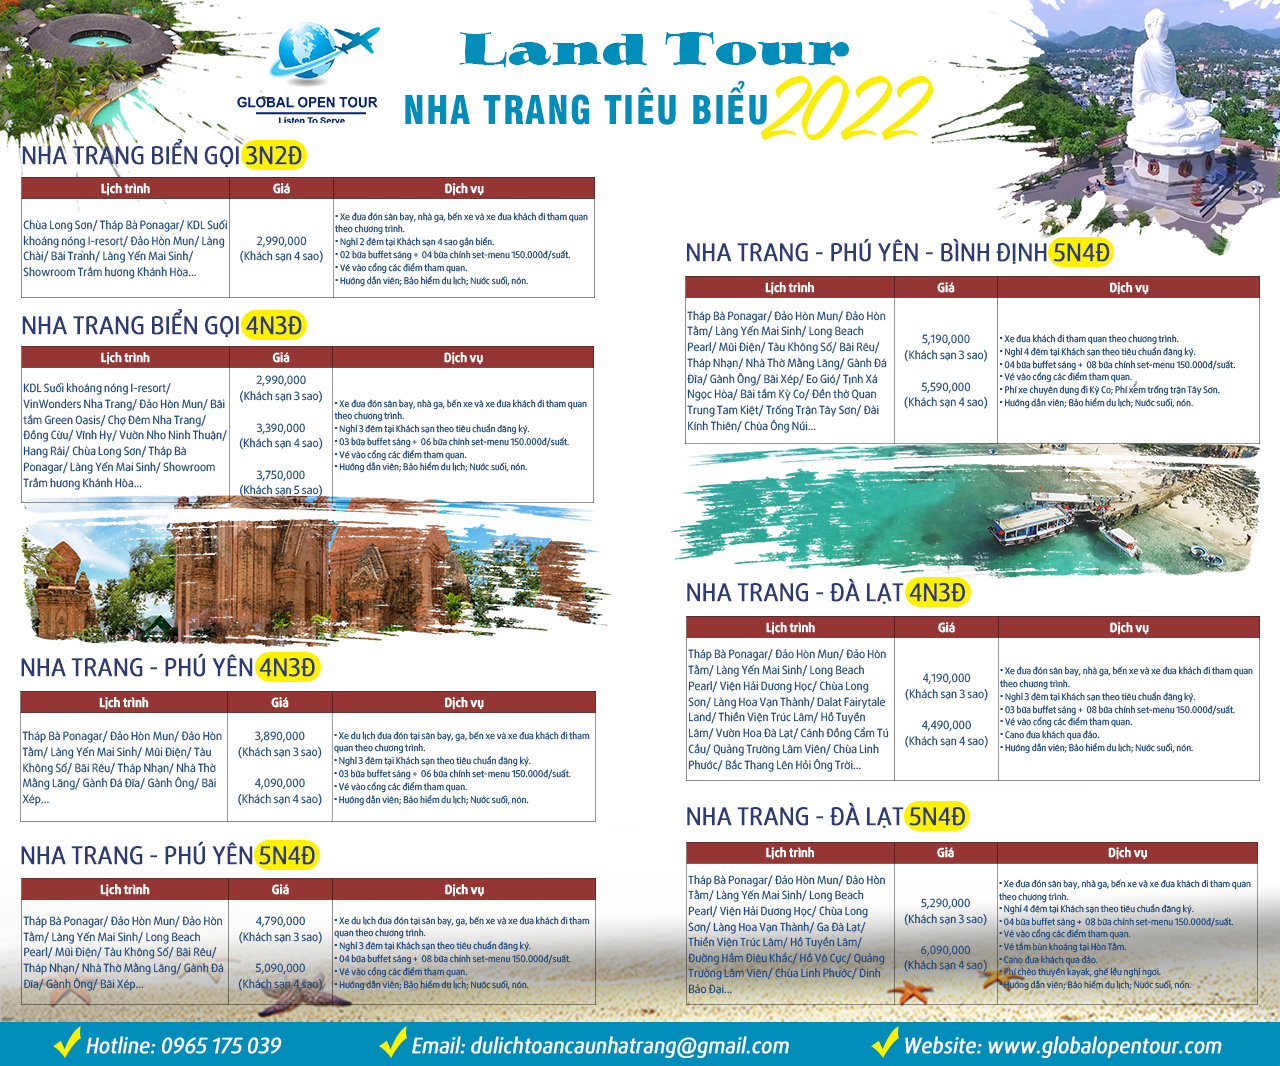 Land Tour Nha Trang tiêu biểu 2022